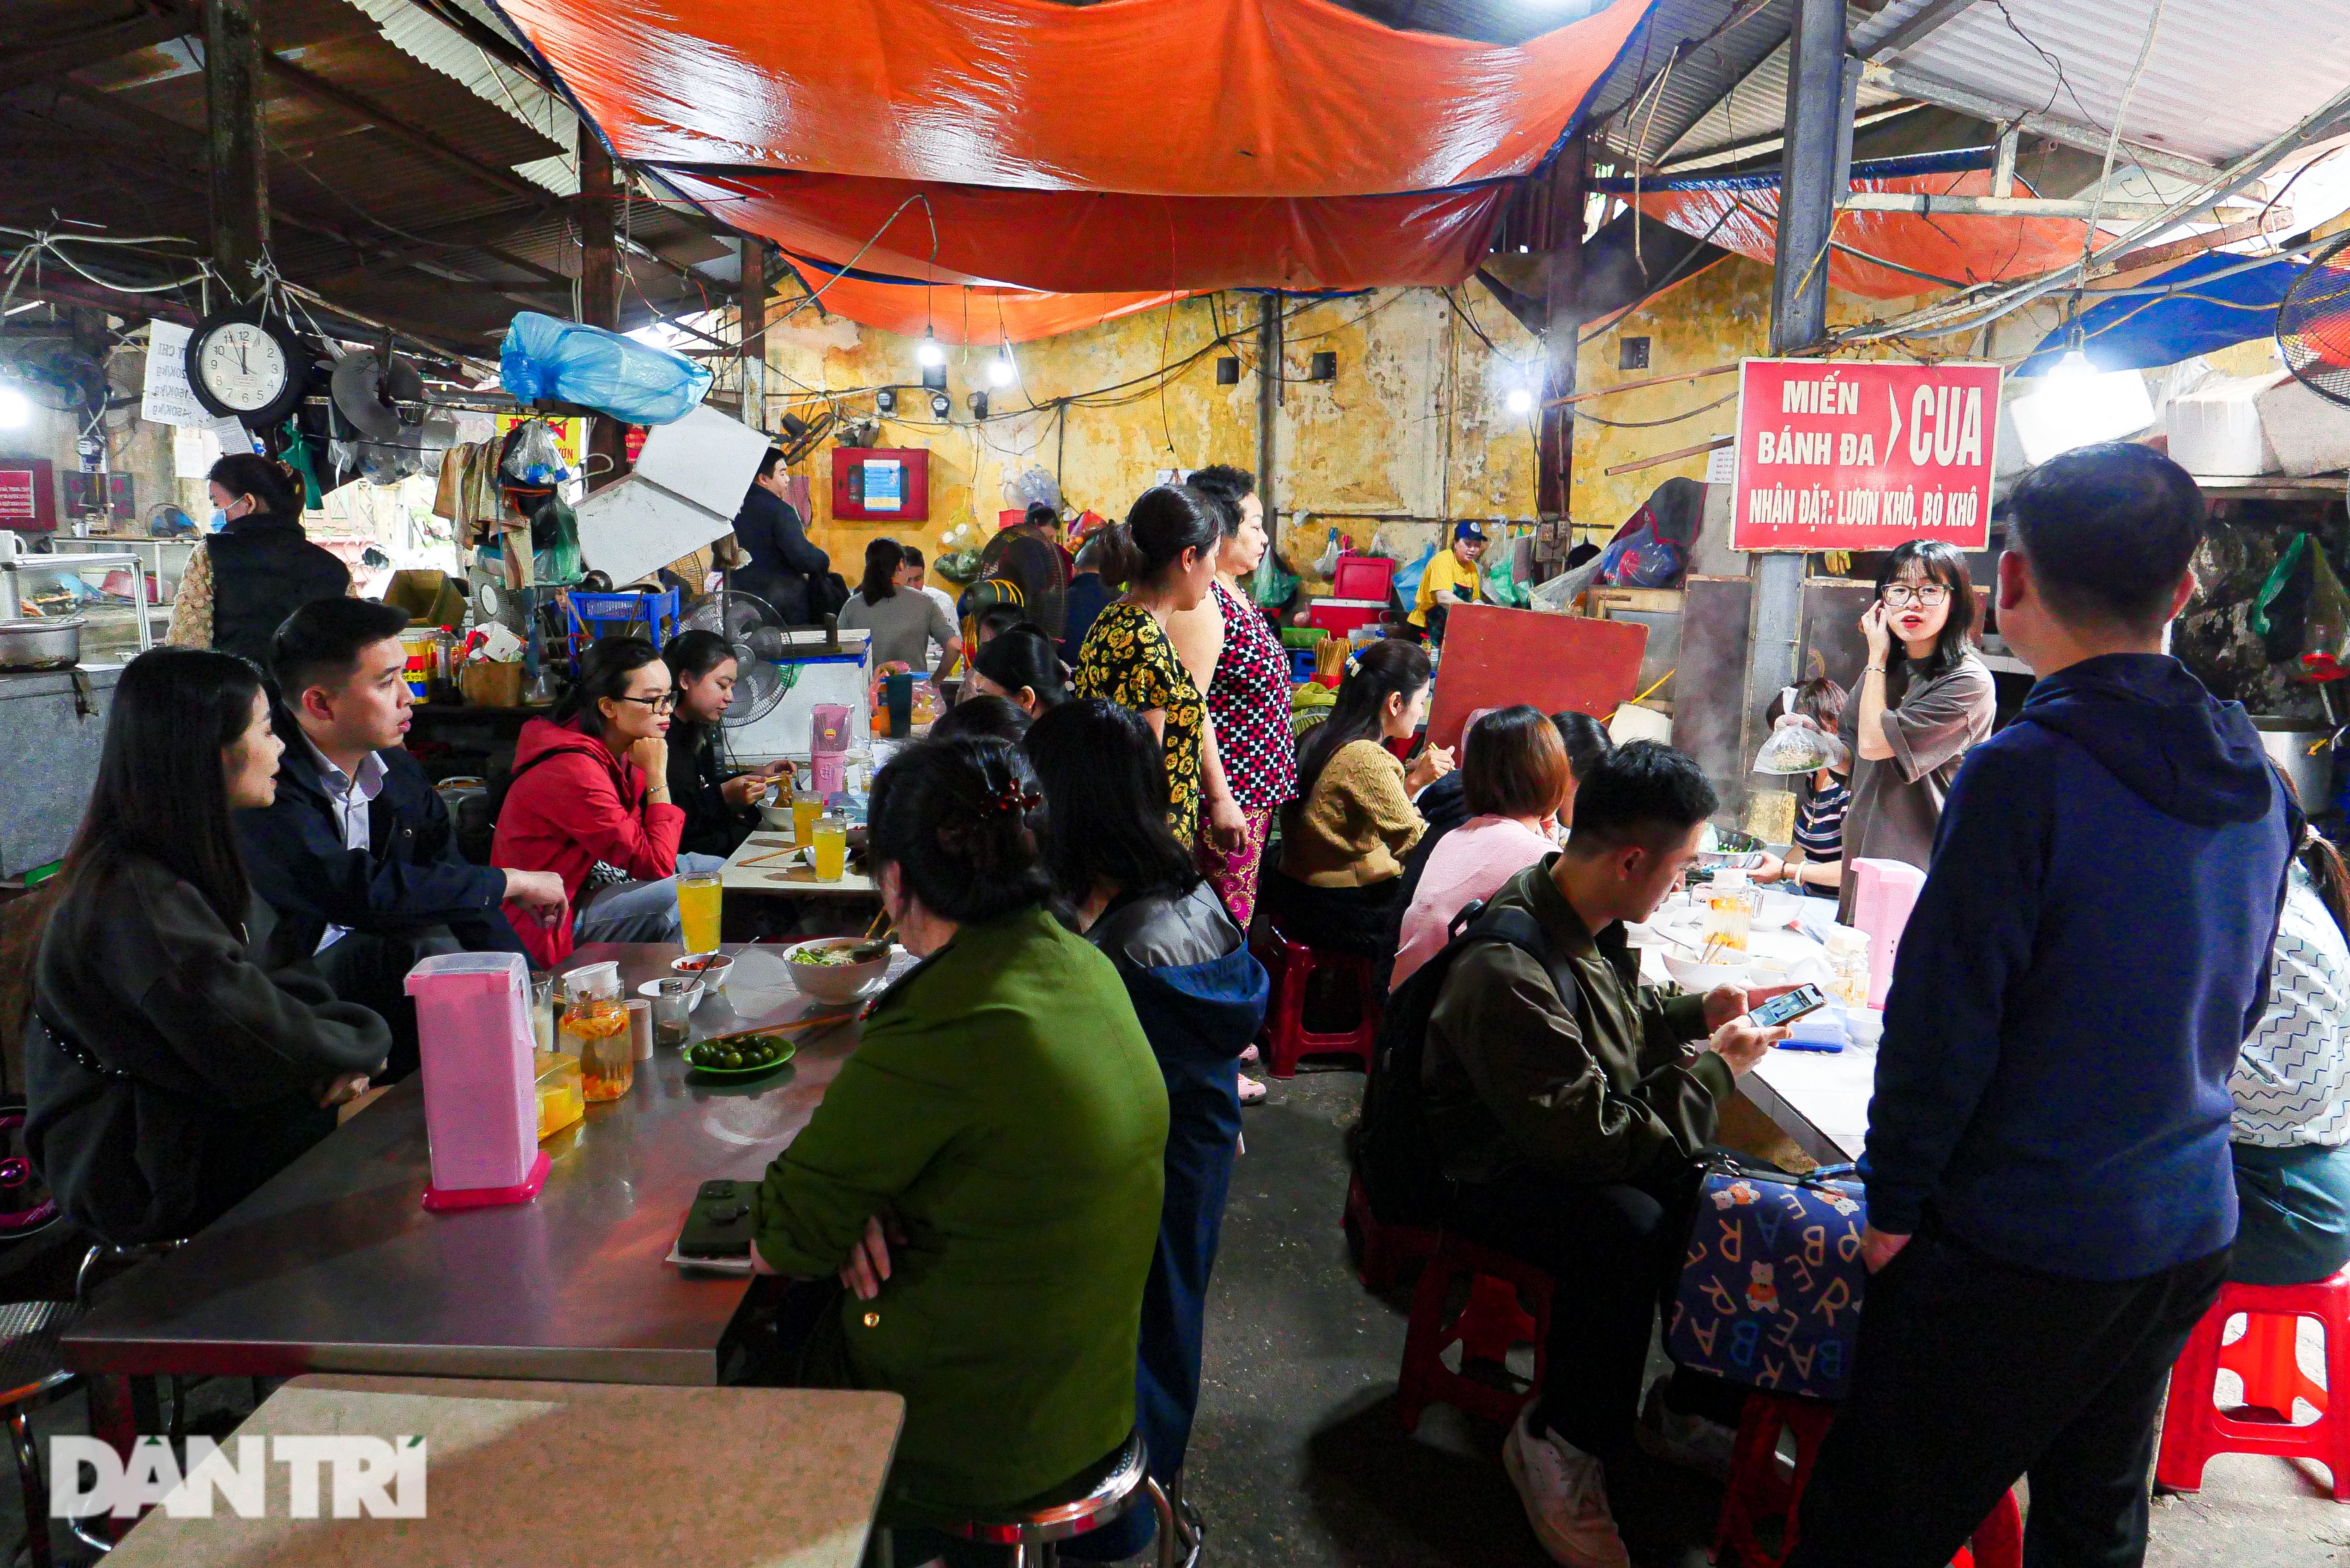 Quán bánh đa chờ, ngày bán hơn 200 bát gần 30 năm tuổi ở Hà Nội - 1